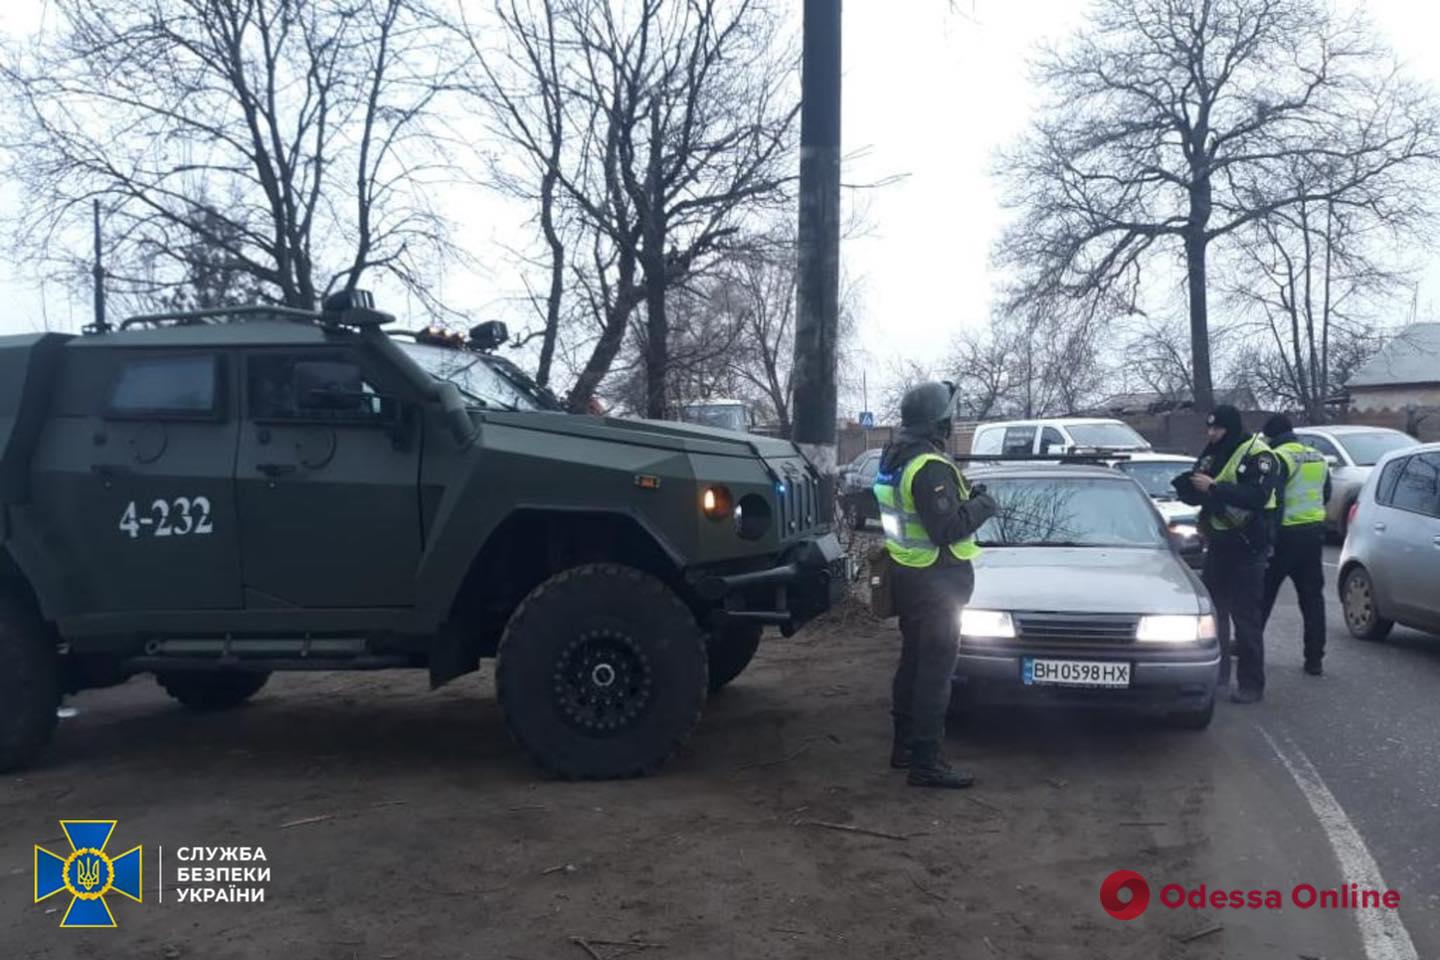 Во время учений СБУ в Одесской области задержали разыскиваемых Интерполом, изъяли наркотики, оружие и транспорт